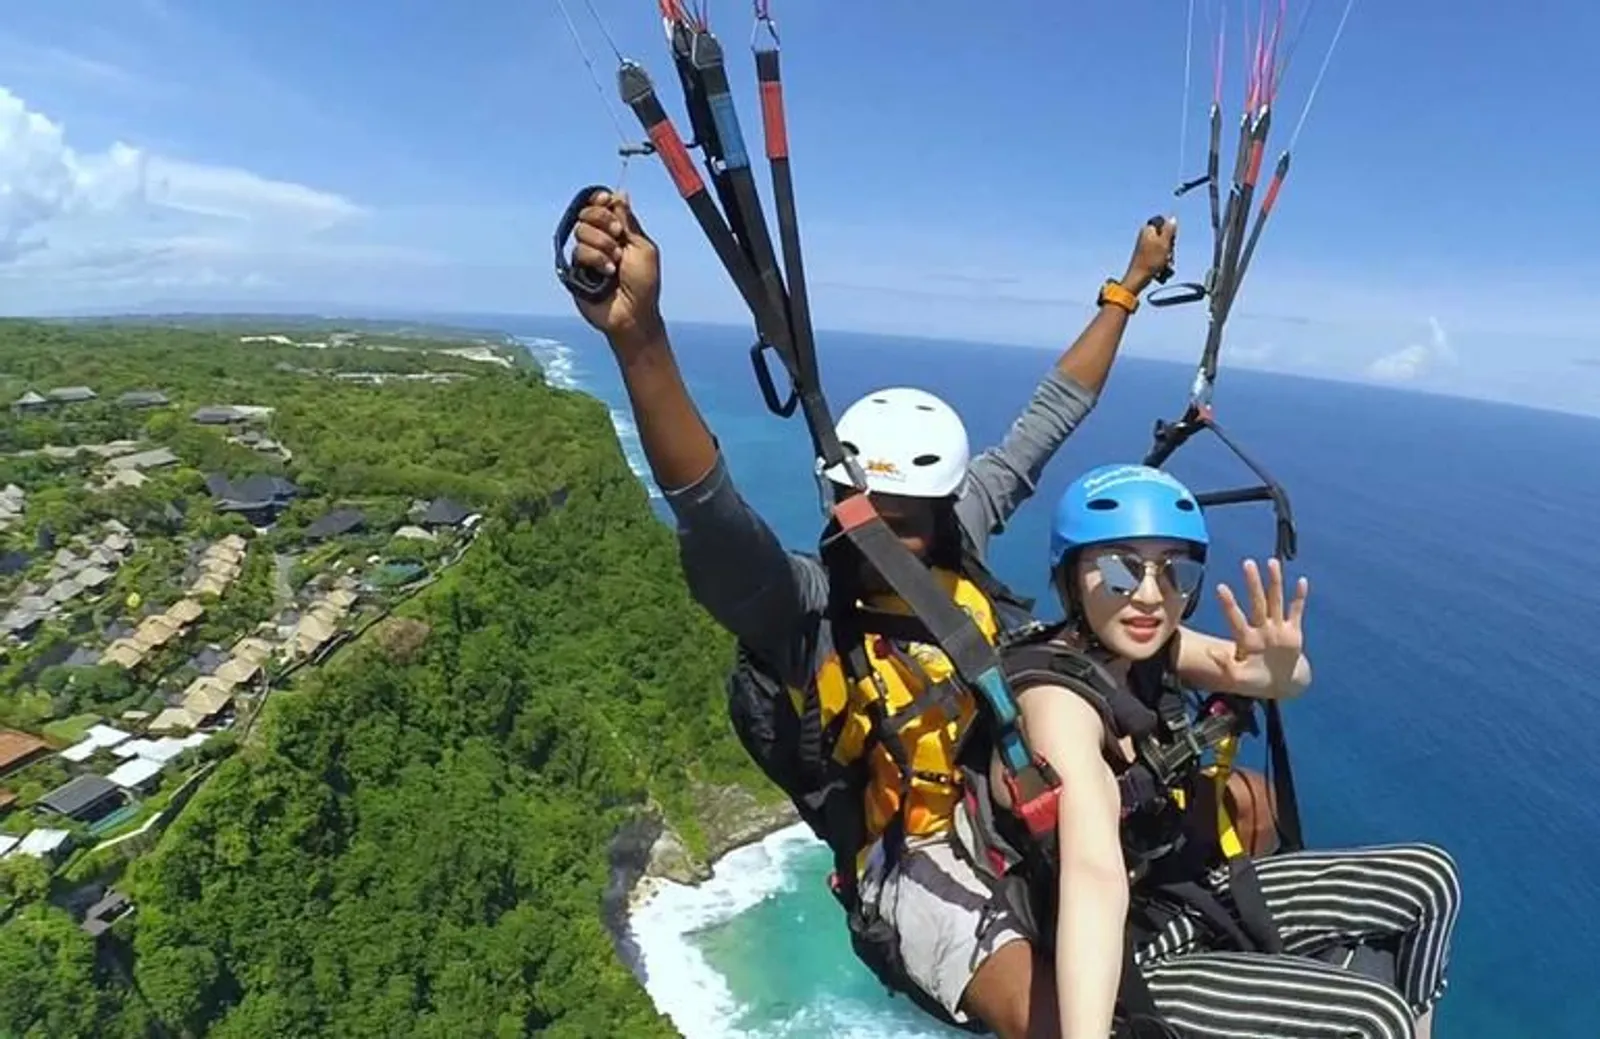 Bukan Cuma ke Pantai, ini Aktivitas Seru yang Bisa Dieksplor di Bali